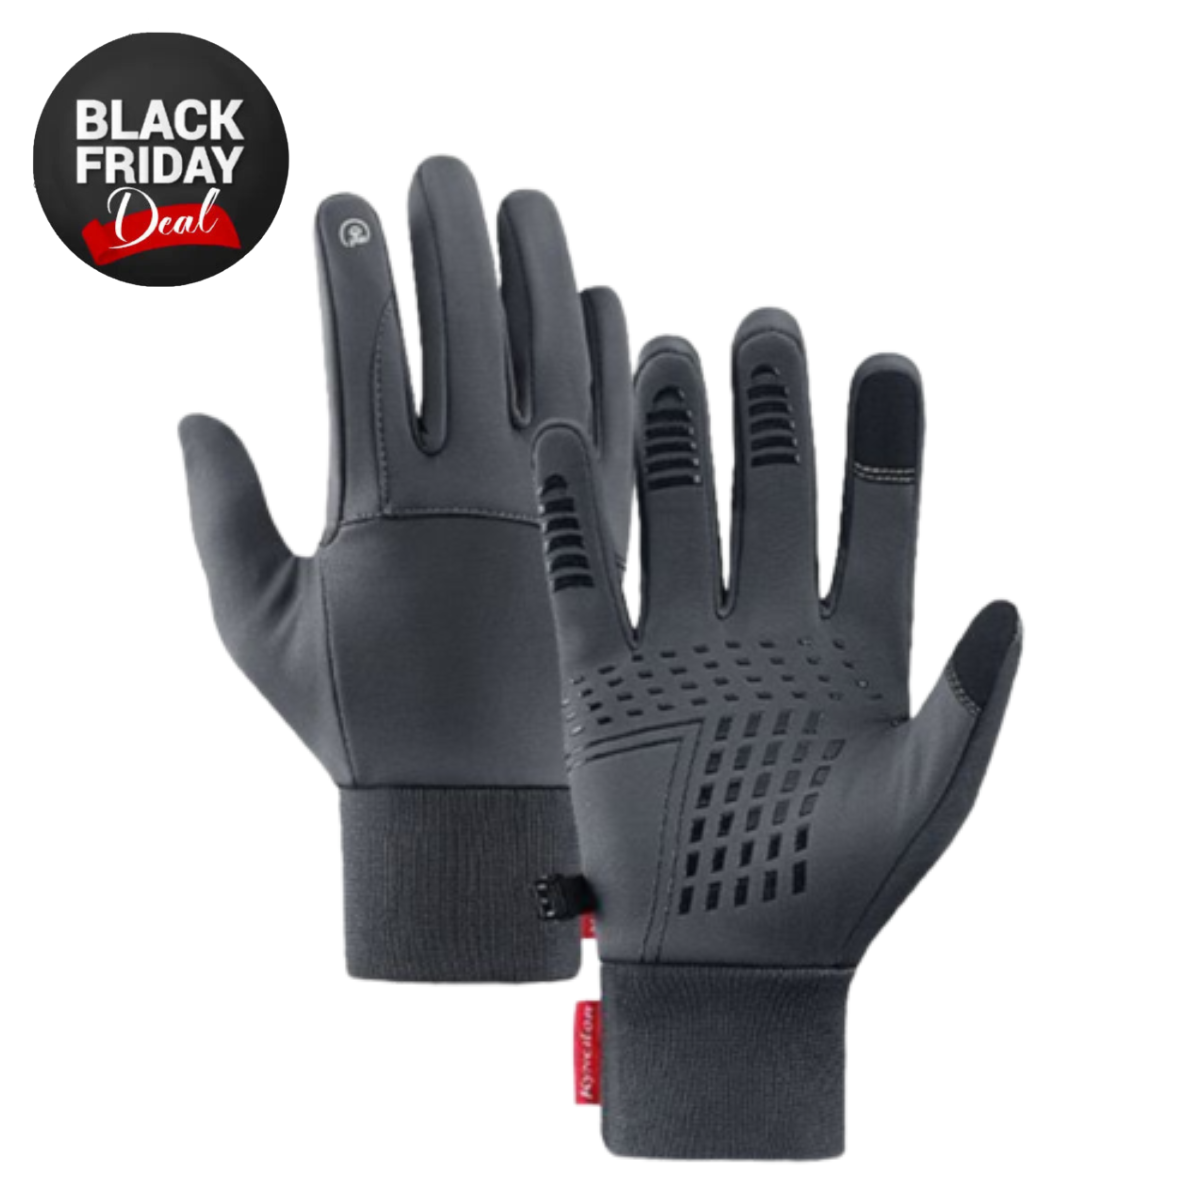 Handsky | Premium vinter termiska handskar